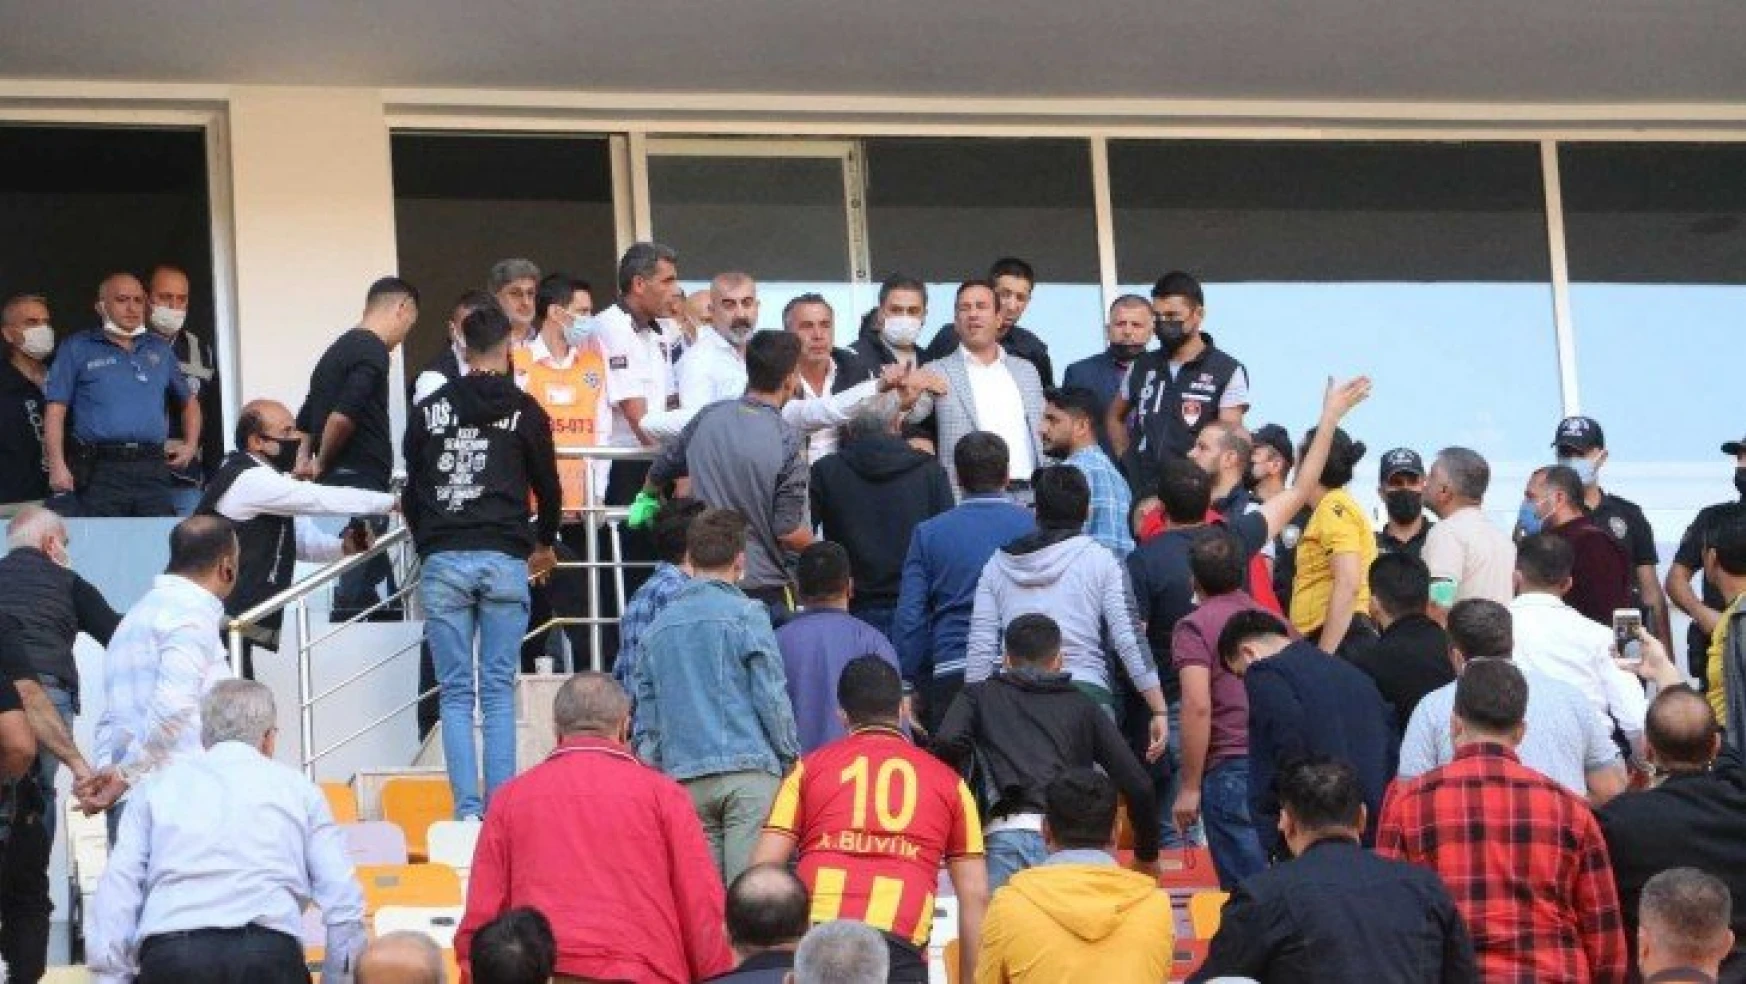 Başkan Gevrek: '4-5 maç yenilirsen taraftarın protestosu da, tepkisi de olur'